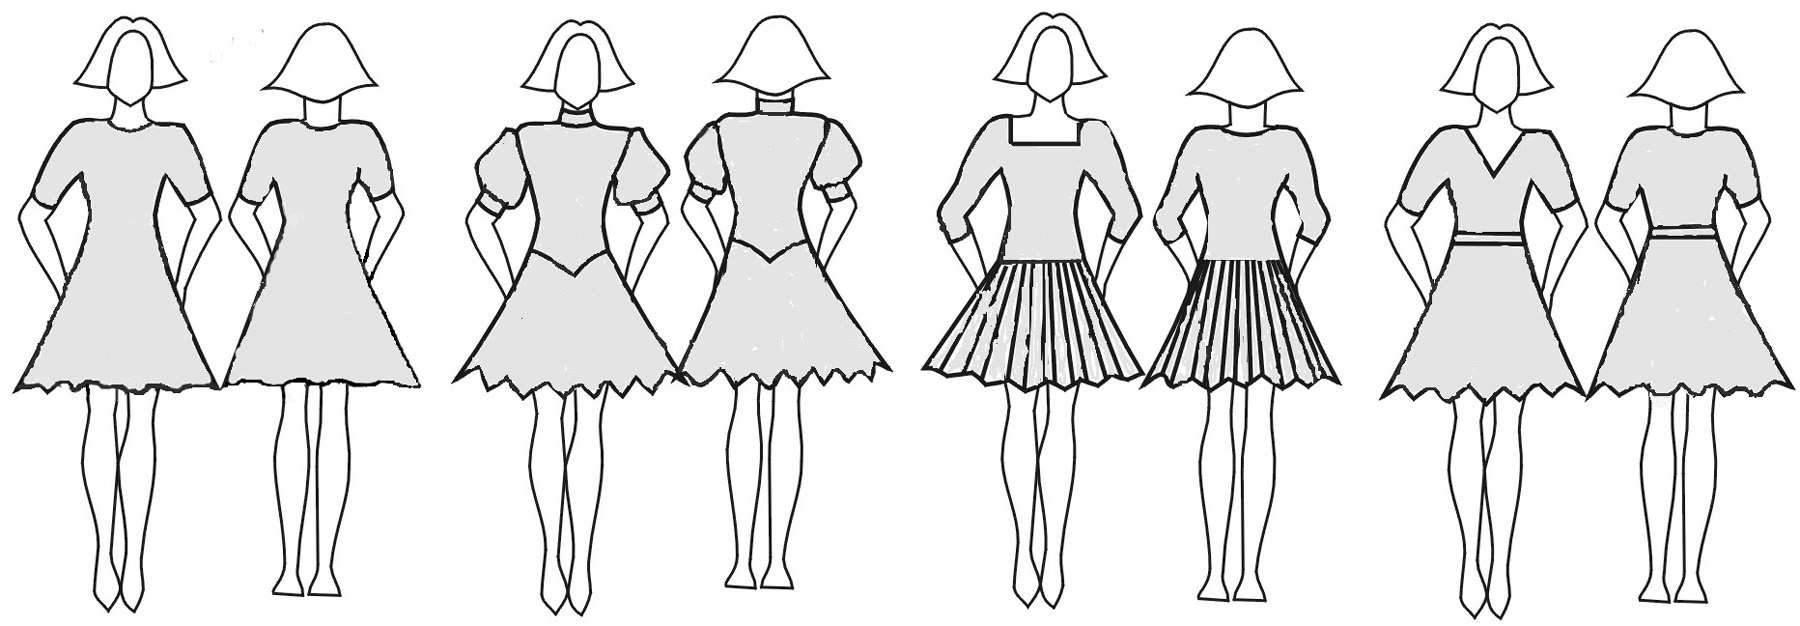 C. Sukne: DL hladká alebo plisovaná, minimálne 1, maximálne 3 polkruhy jedna kruhová spodnica dovolená, väčšia spodnica PZ volány na sukni alebo spodnici, výstuhy lemu sukne všetko PZ dĺžka nesmie